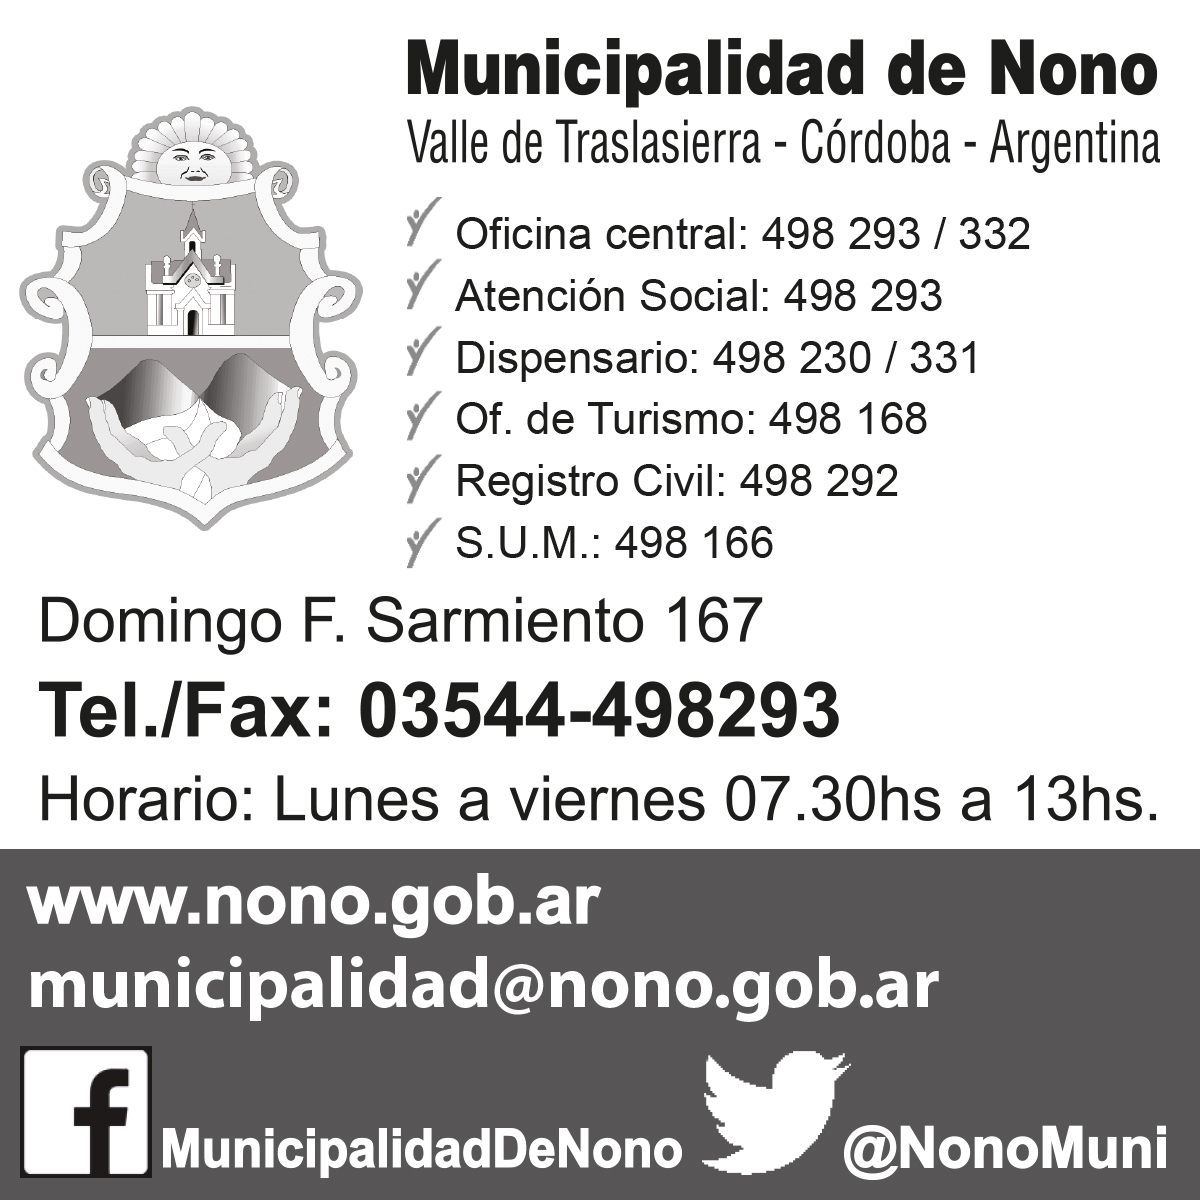 Municipalidad de Nono - Valle de Traslasierra, Córdoba, Argentina, oficina central, acción social, dispensario, of. de turismo, registro civil, S.U.M.